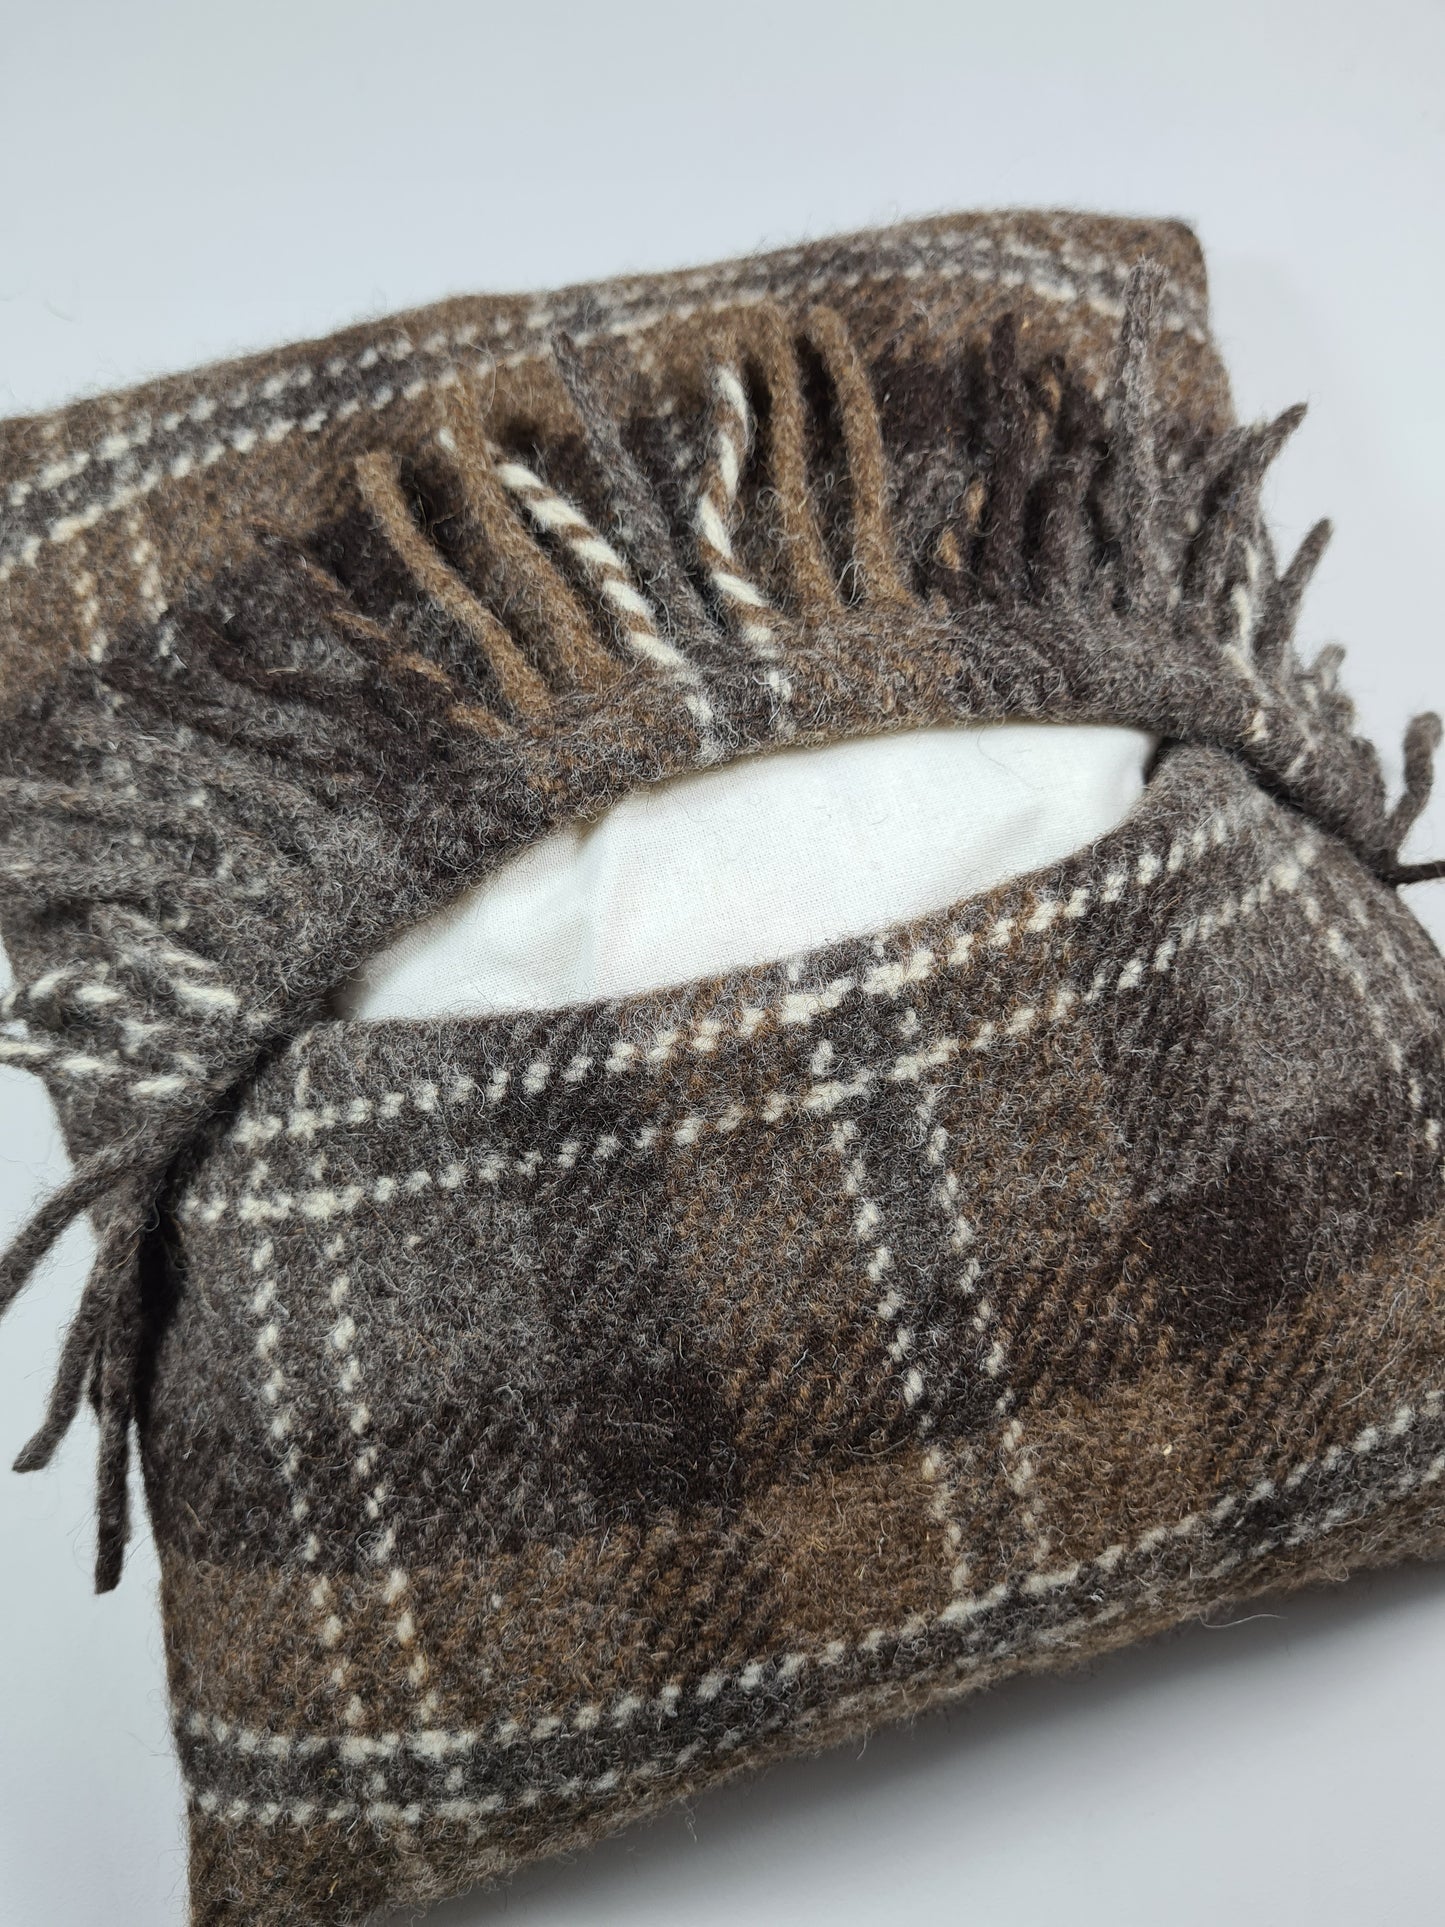 Shetland Wool Cushion - Brown Tartan